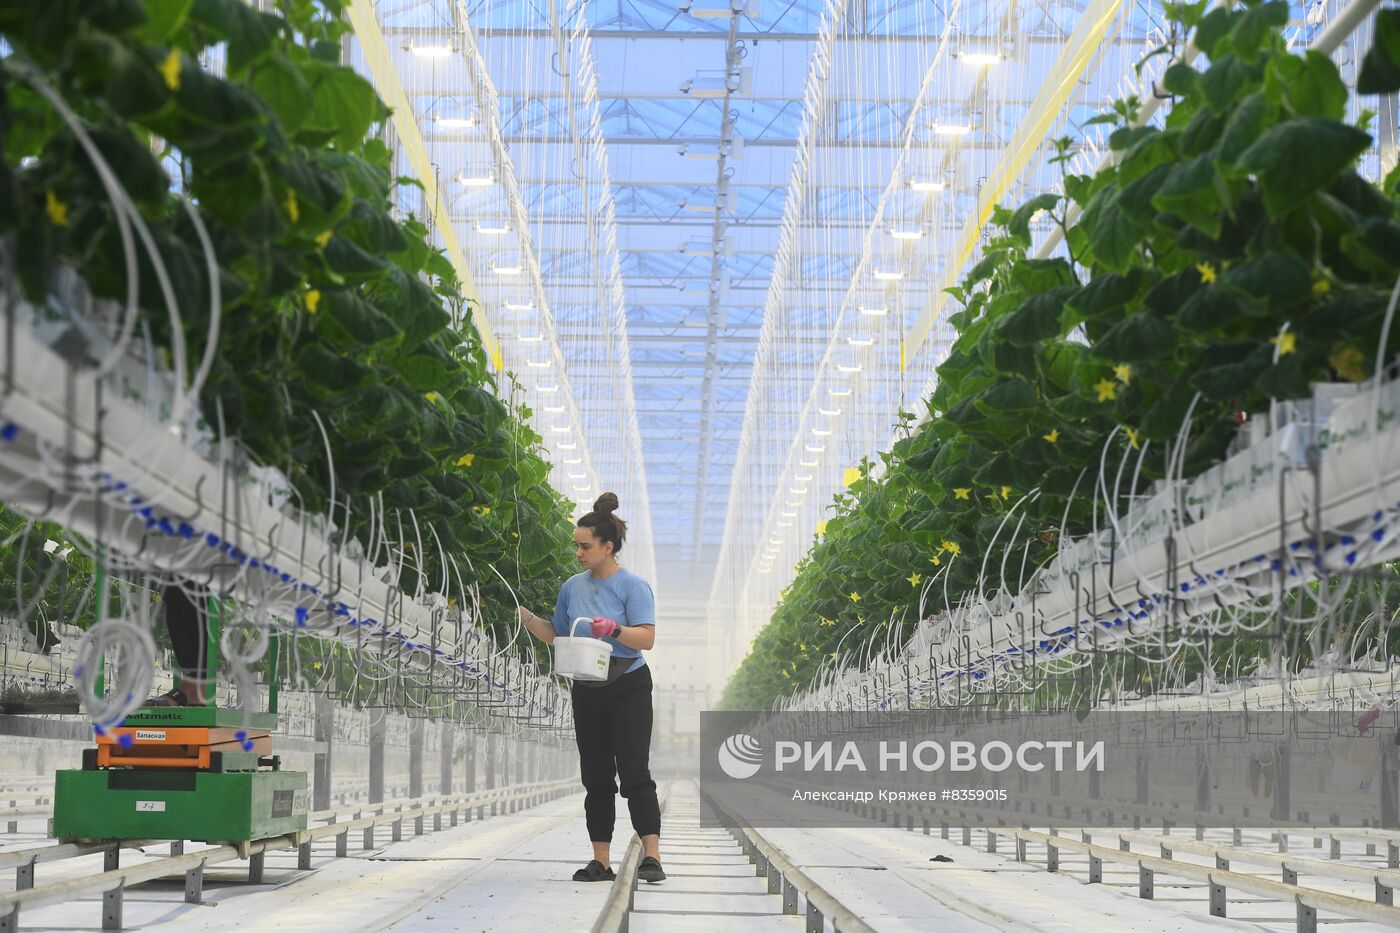 Агрокомплекс "Сады Гиганта" в Новосибирской области